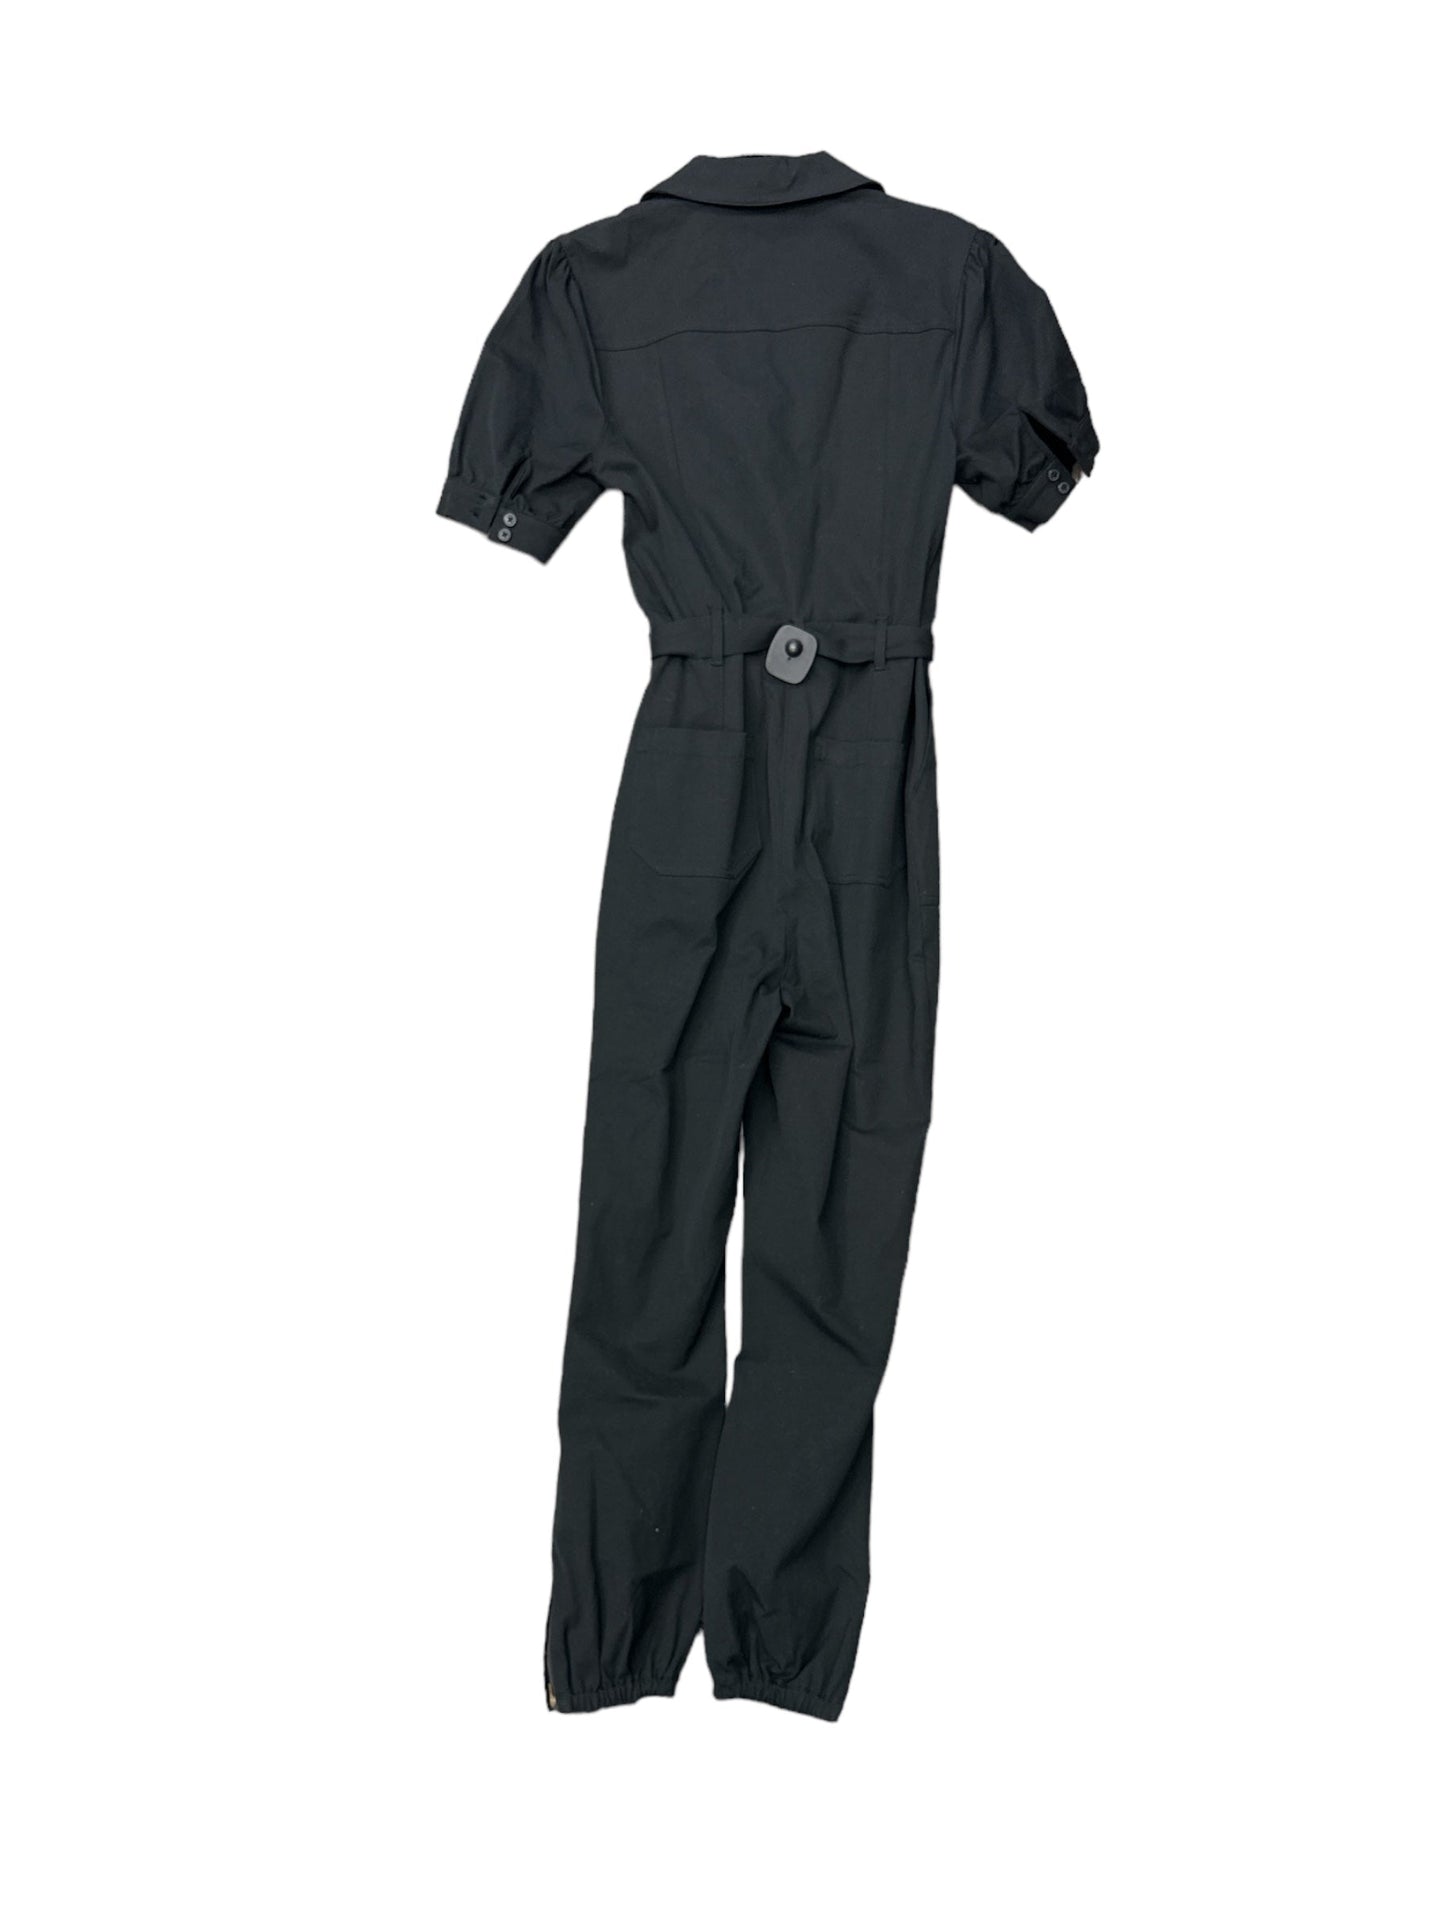 Black Jumpsuit Clothes Mentor, Size S